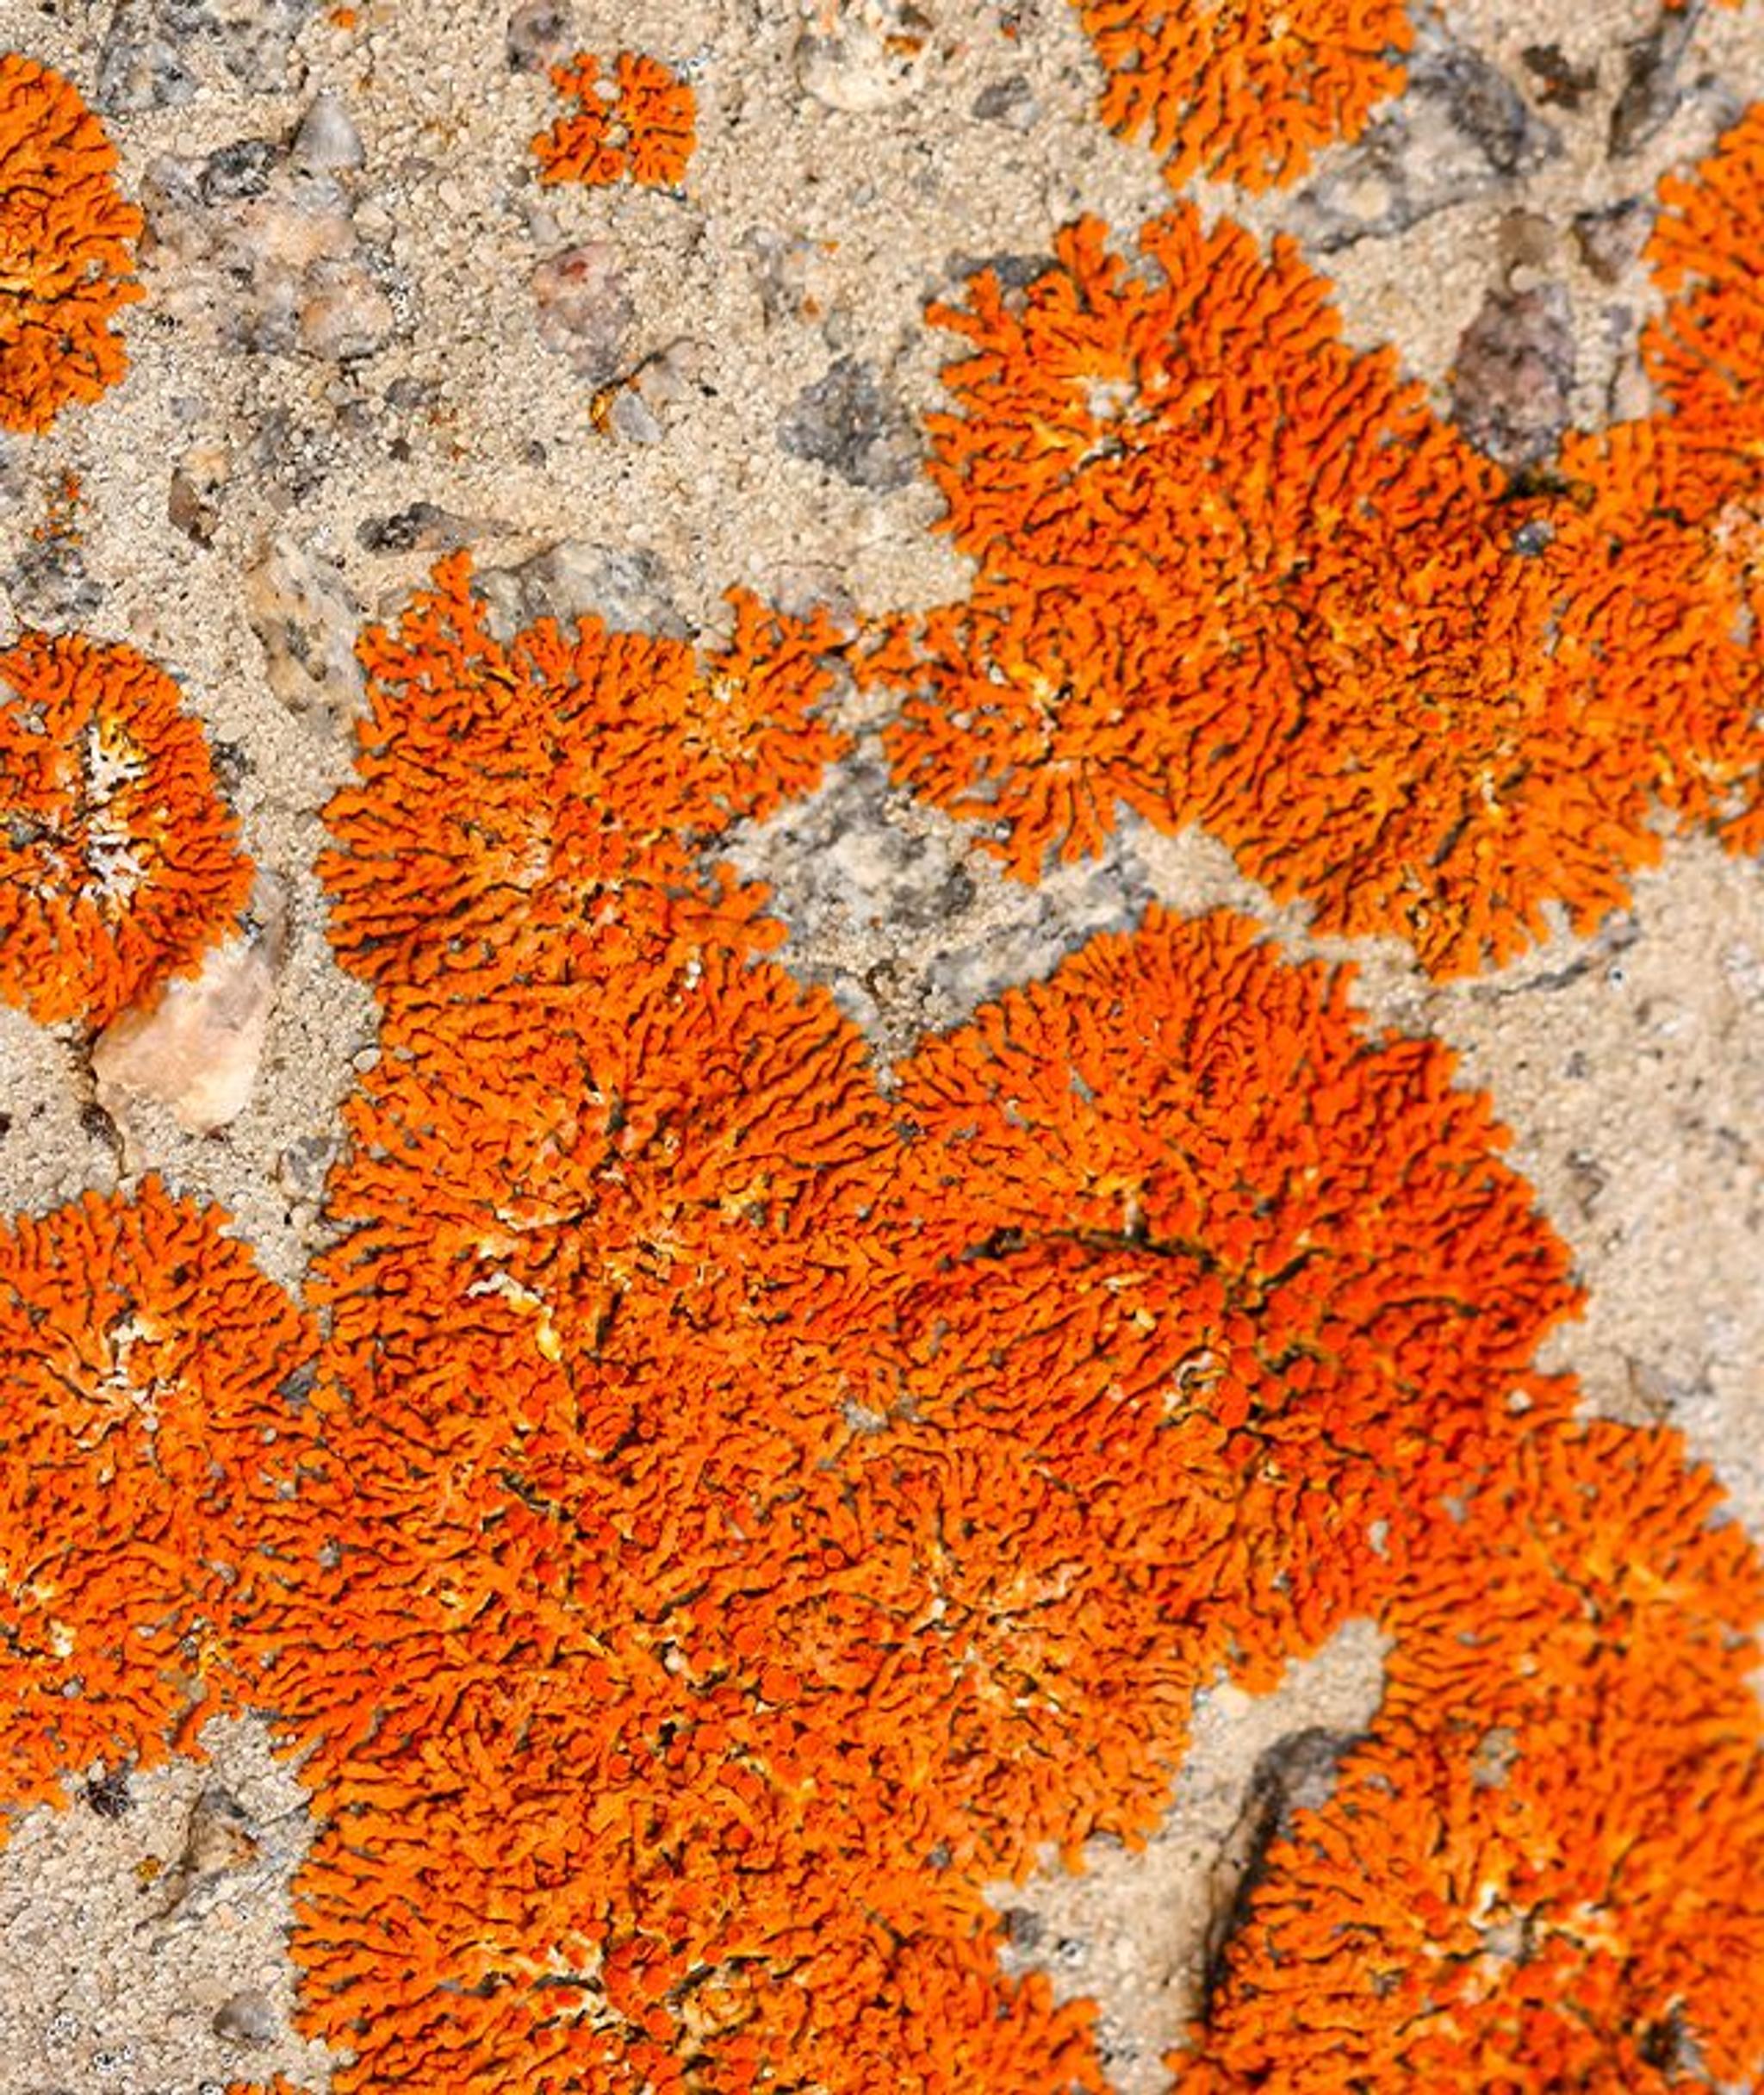 Mousses et lichens